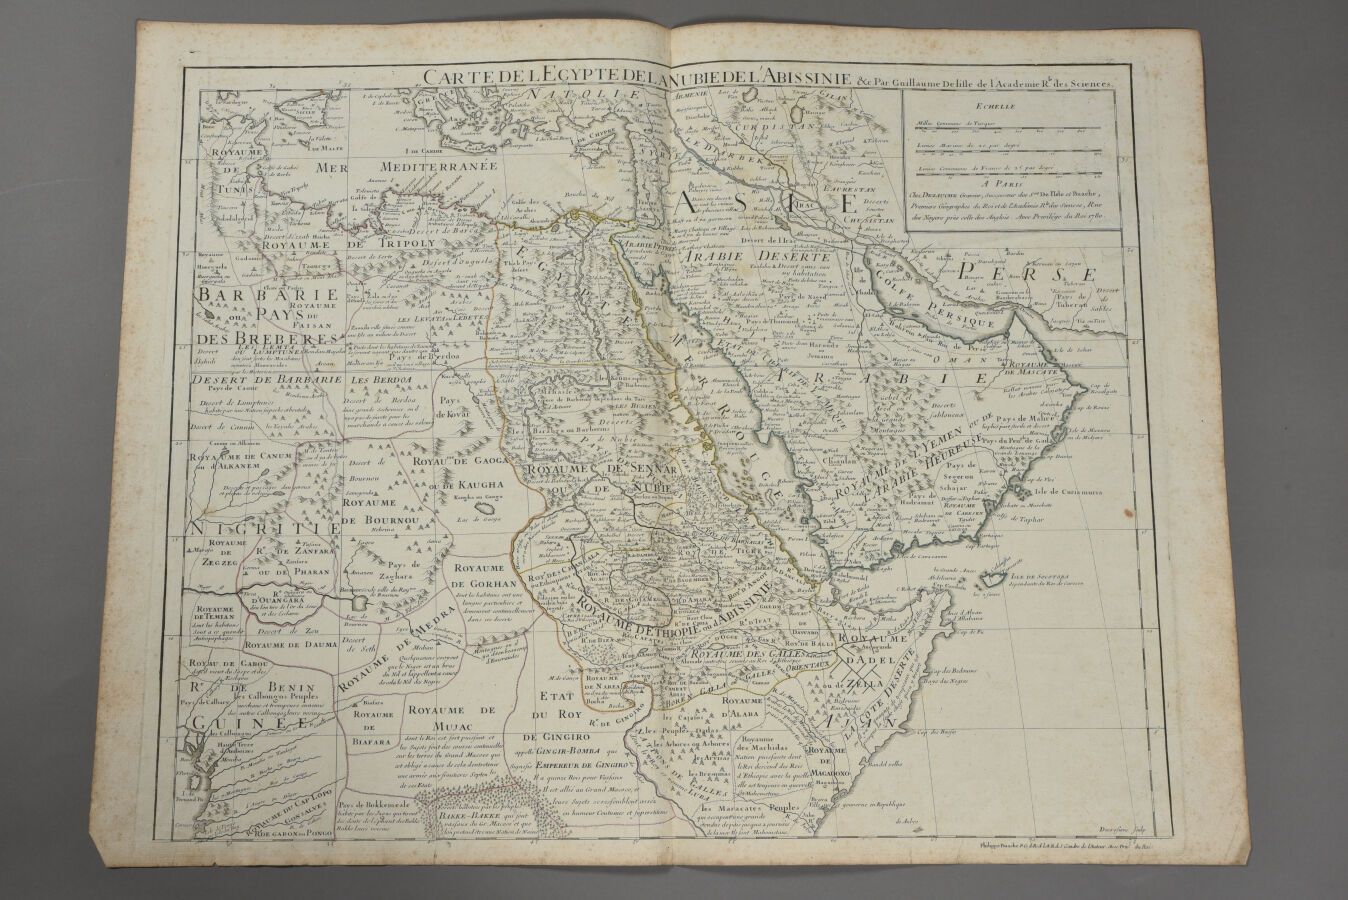 Null 纪尧姆-德利斯勒和他的继承人德佐赫
(法国，18世纪)
埃及、努比亚和阿比西尼亚地图。1780.
双开本。 
点蚀和折痕，等等。